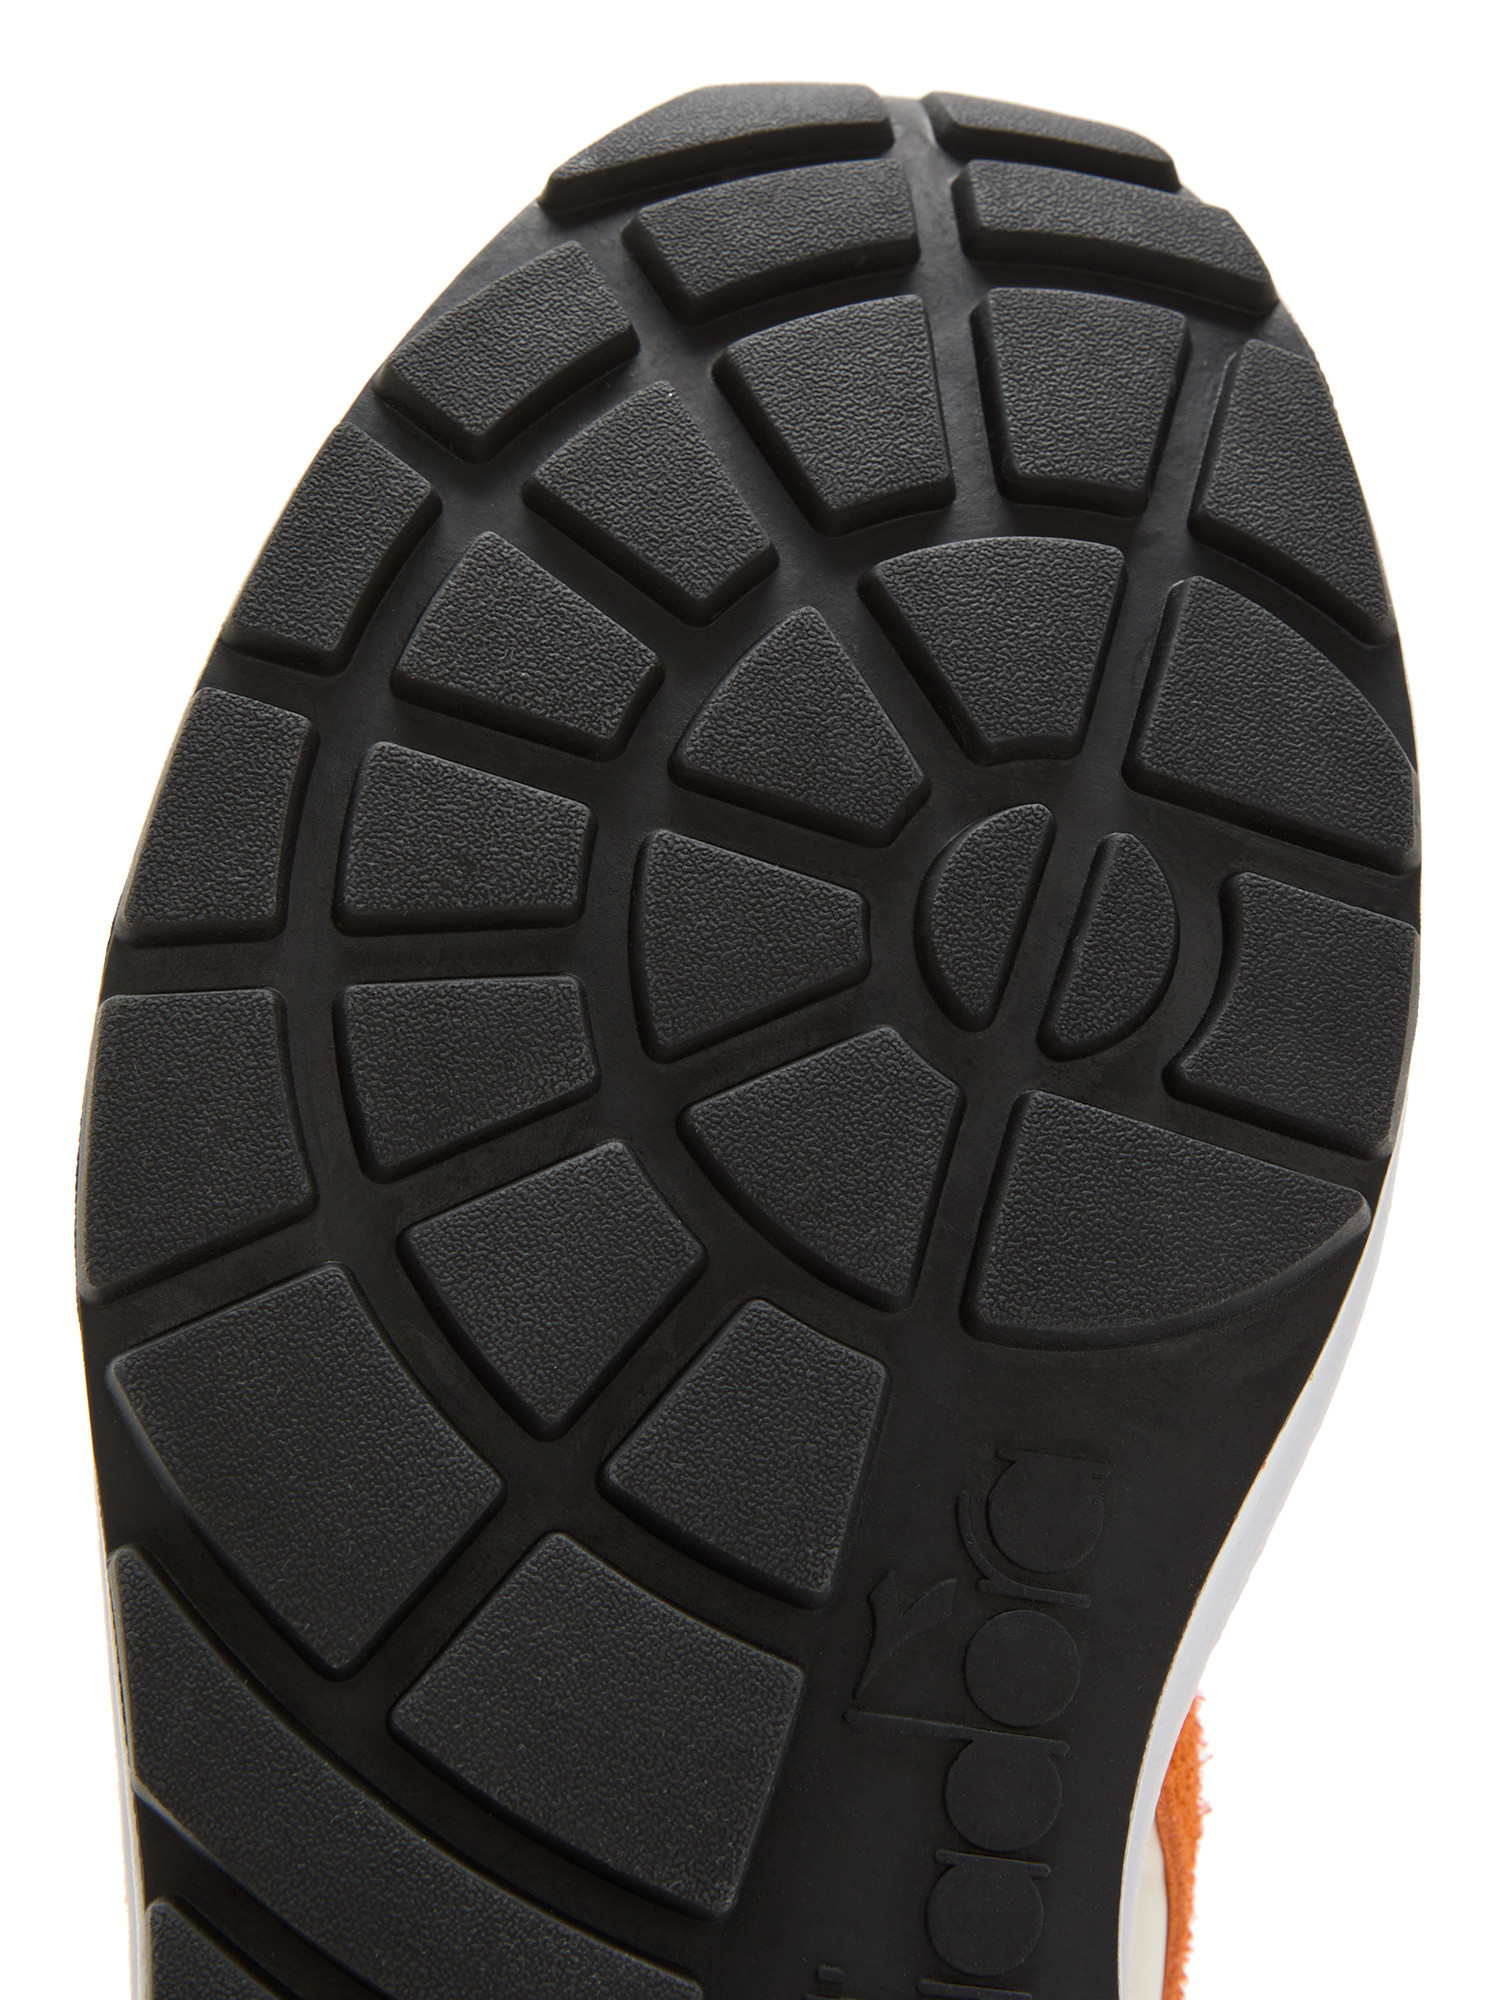 Diadora - K Maro Halloween Shoes, Black, large image number 3